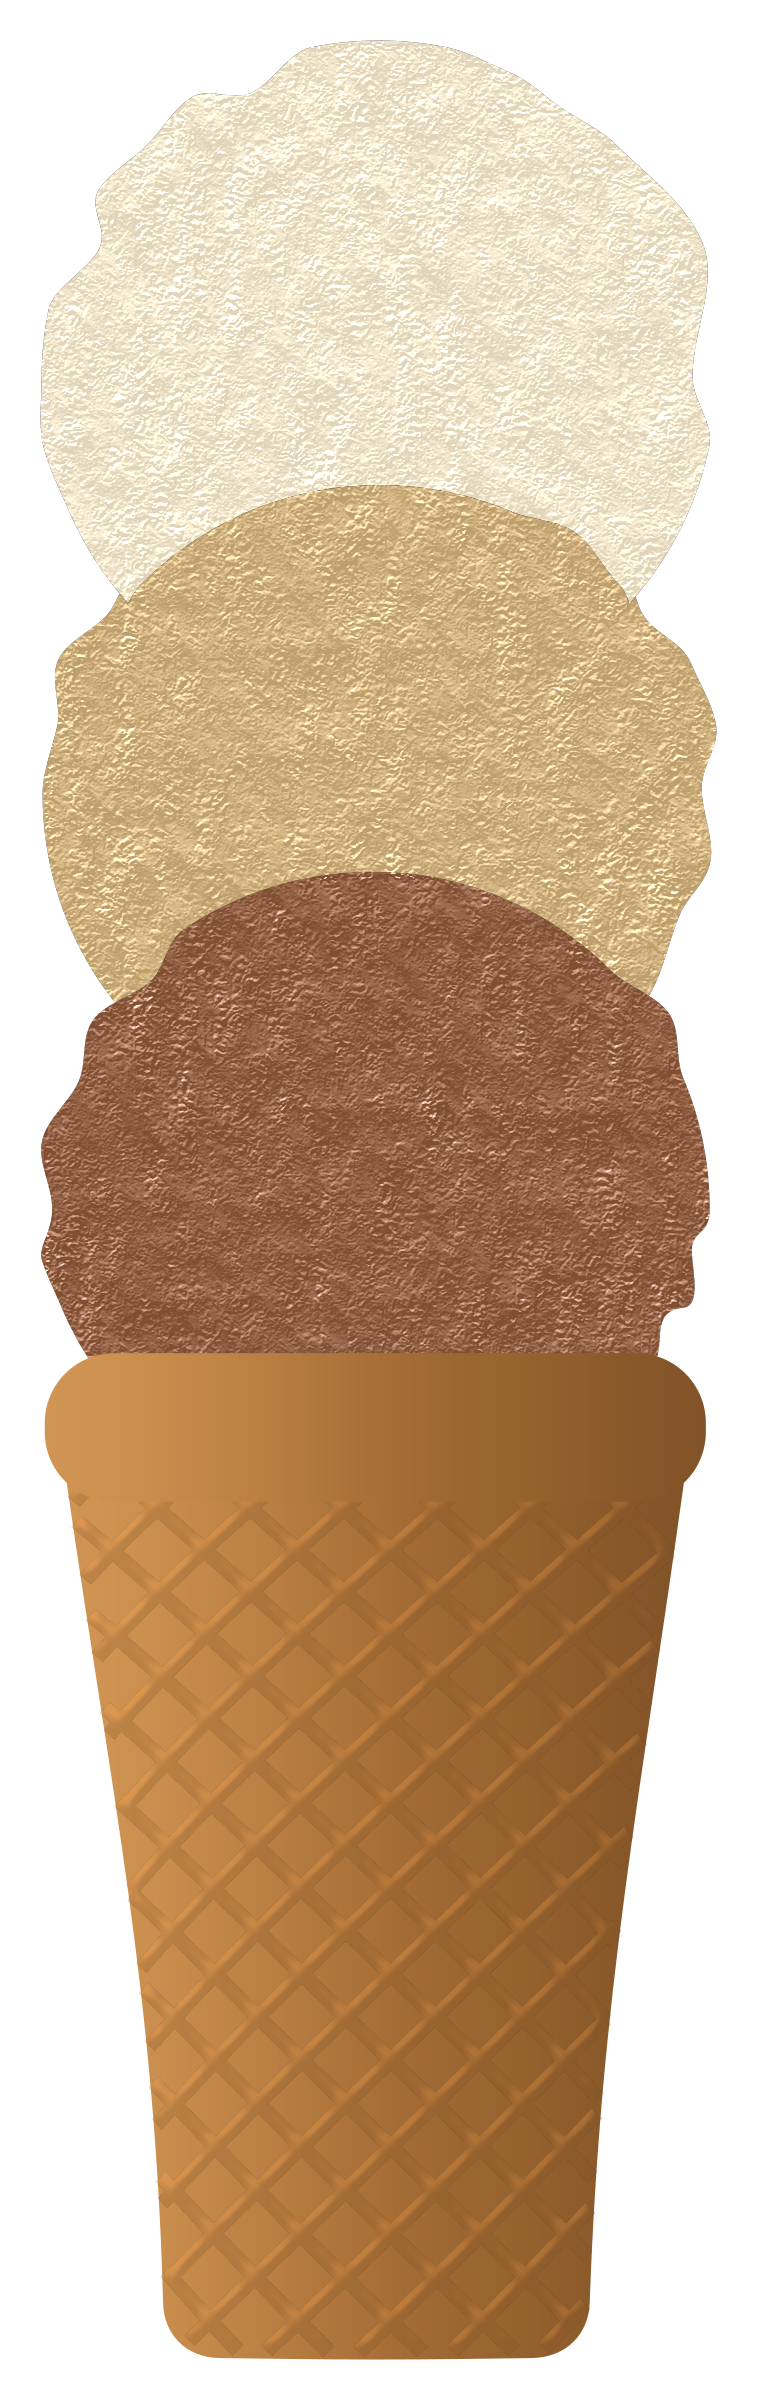 Ice cream cone SVG Clip arts